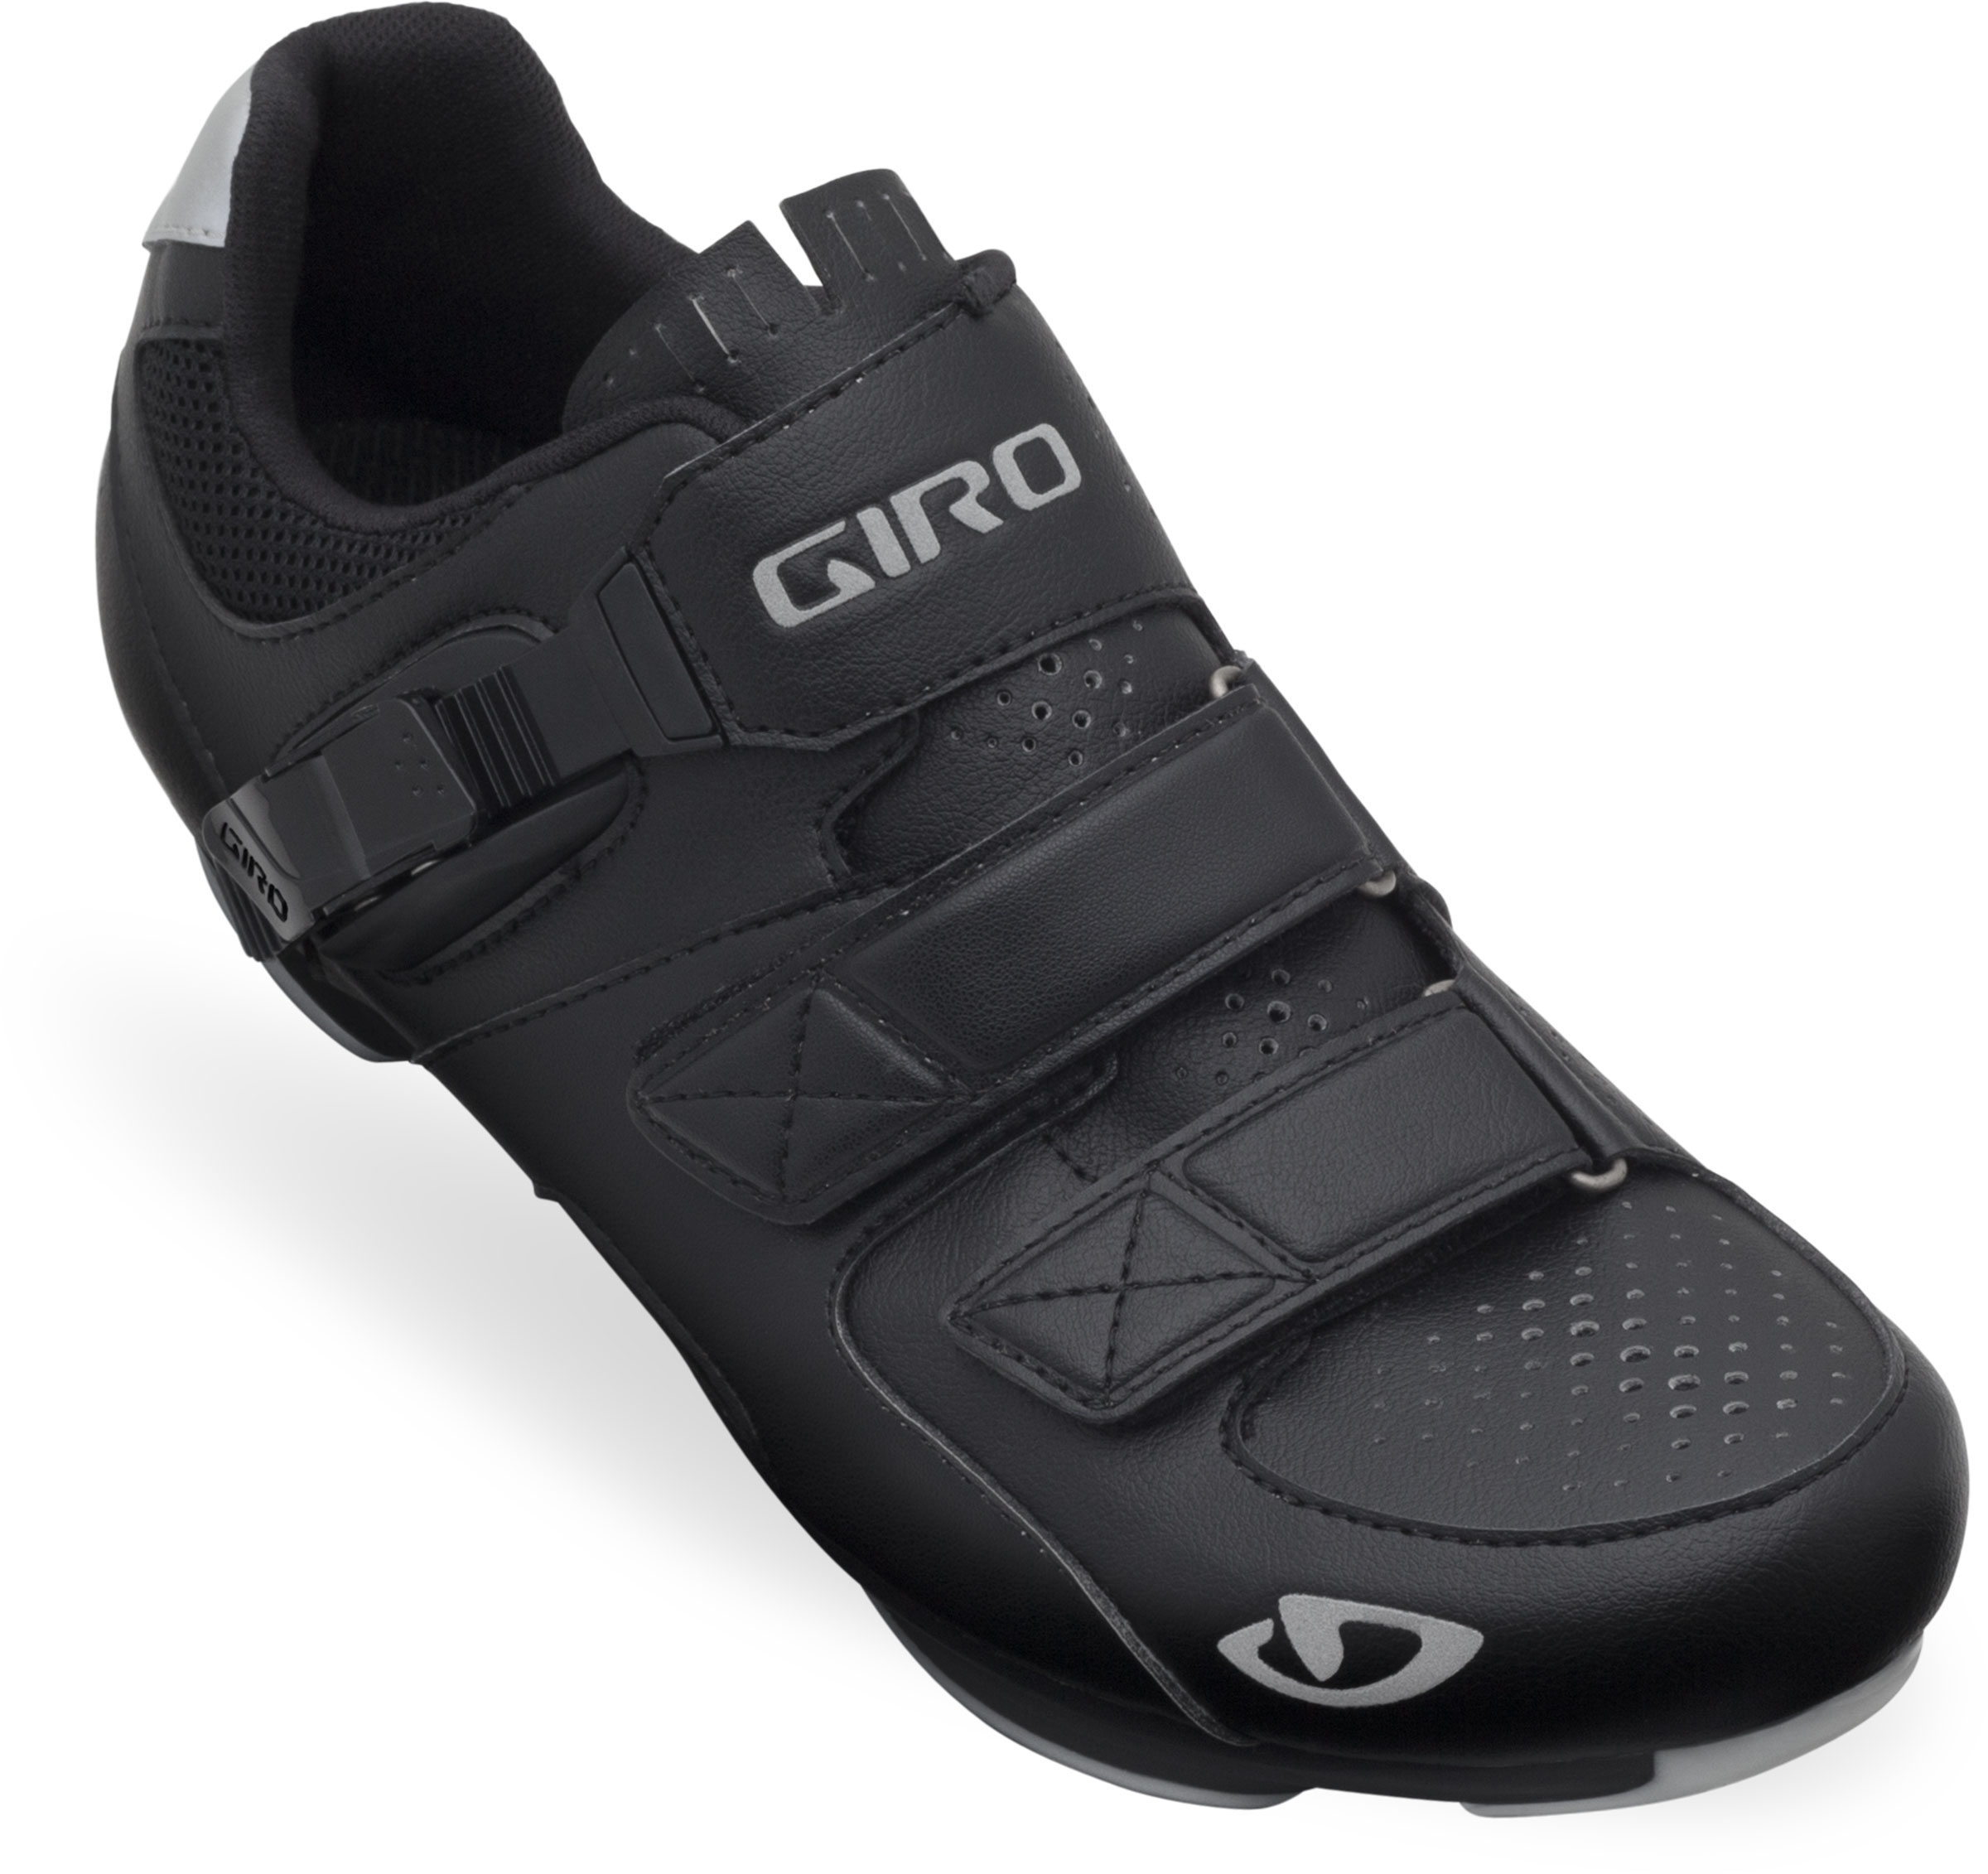 Giro Territory Shoes - Bert's Bikes & Fitness